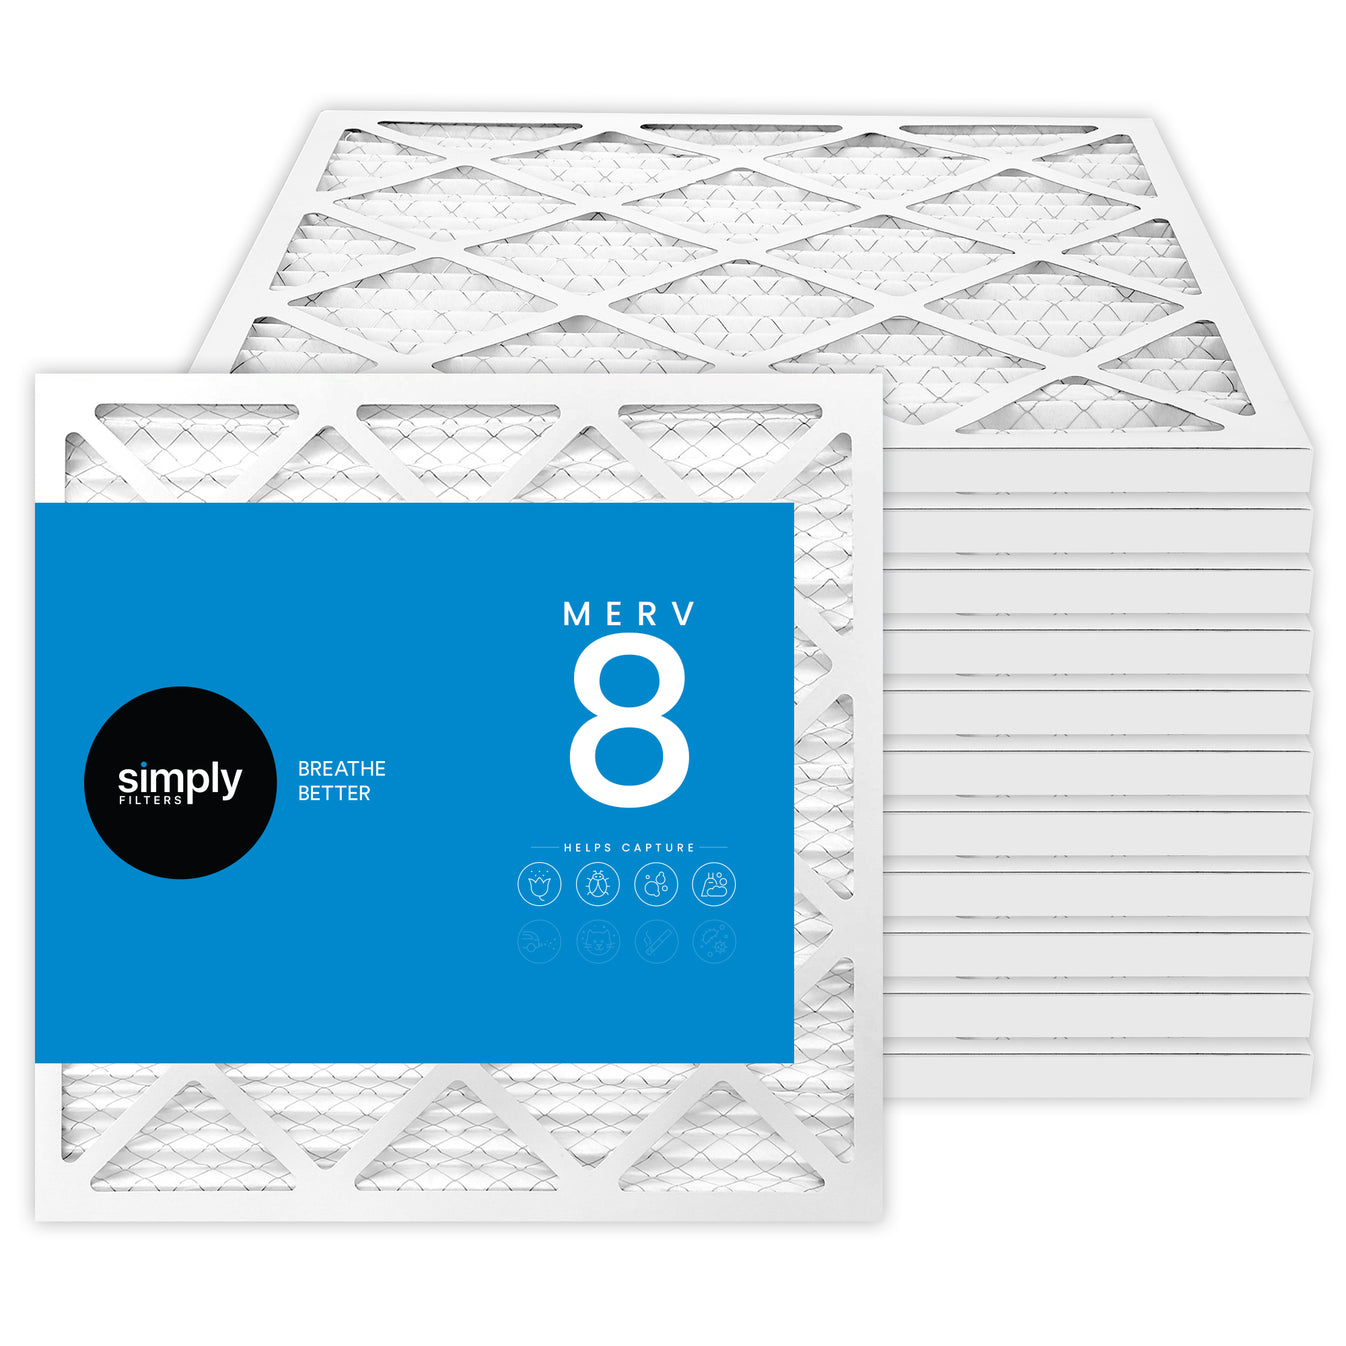 6x12.25x1 Merv 8 Pleated Air Filter